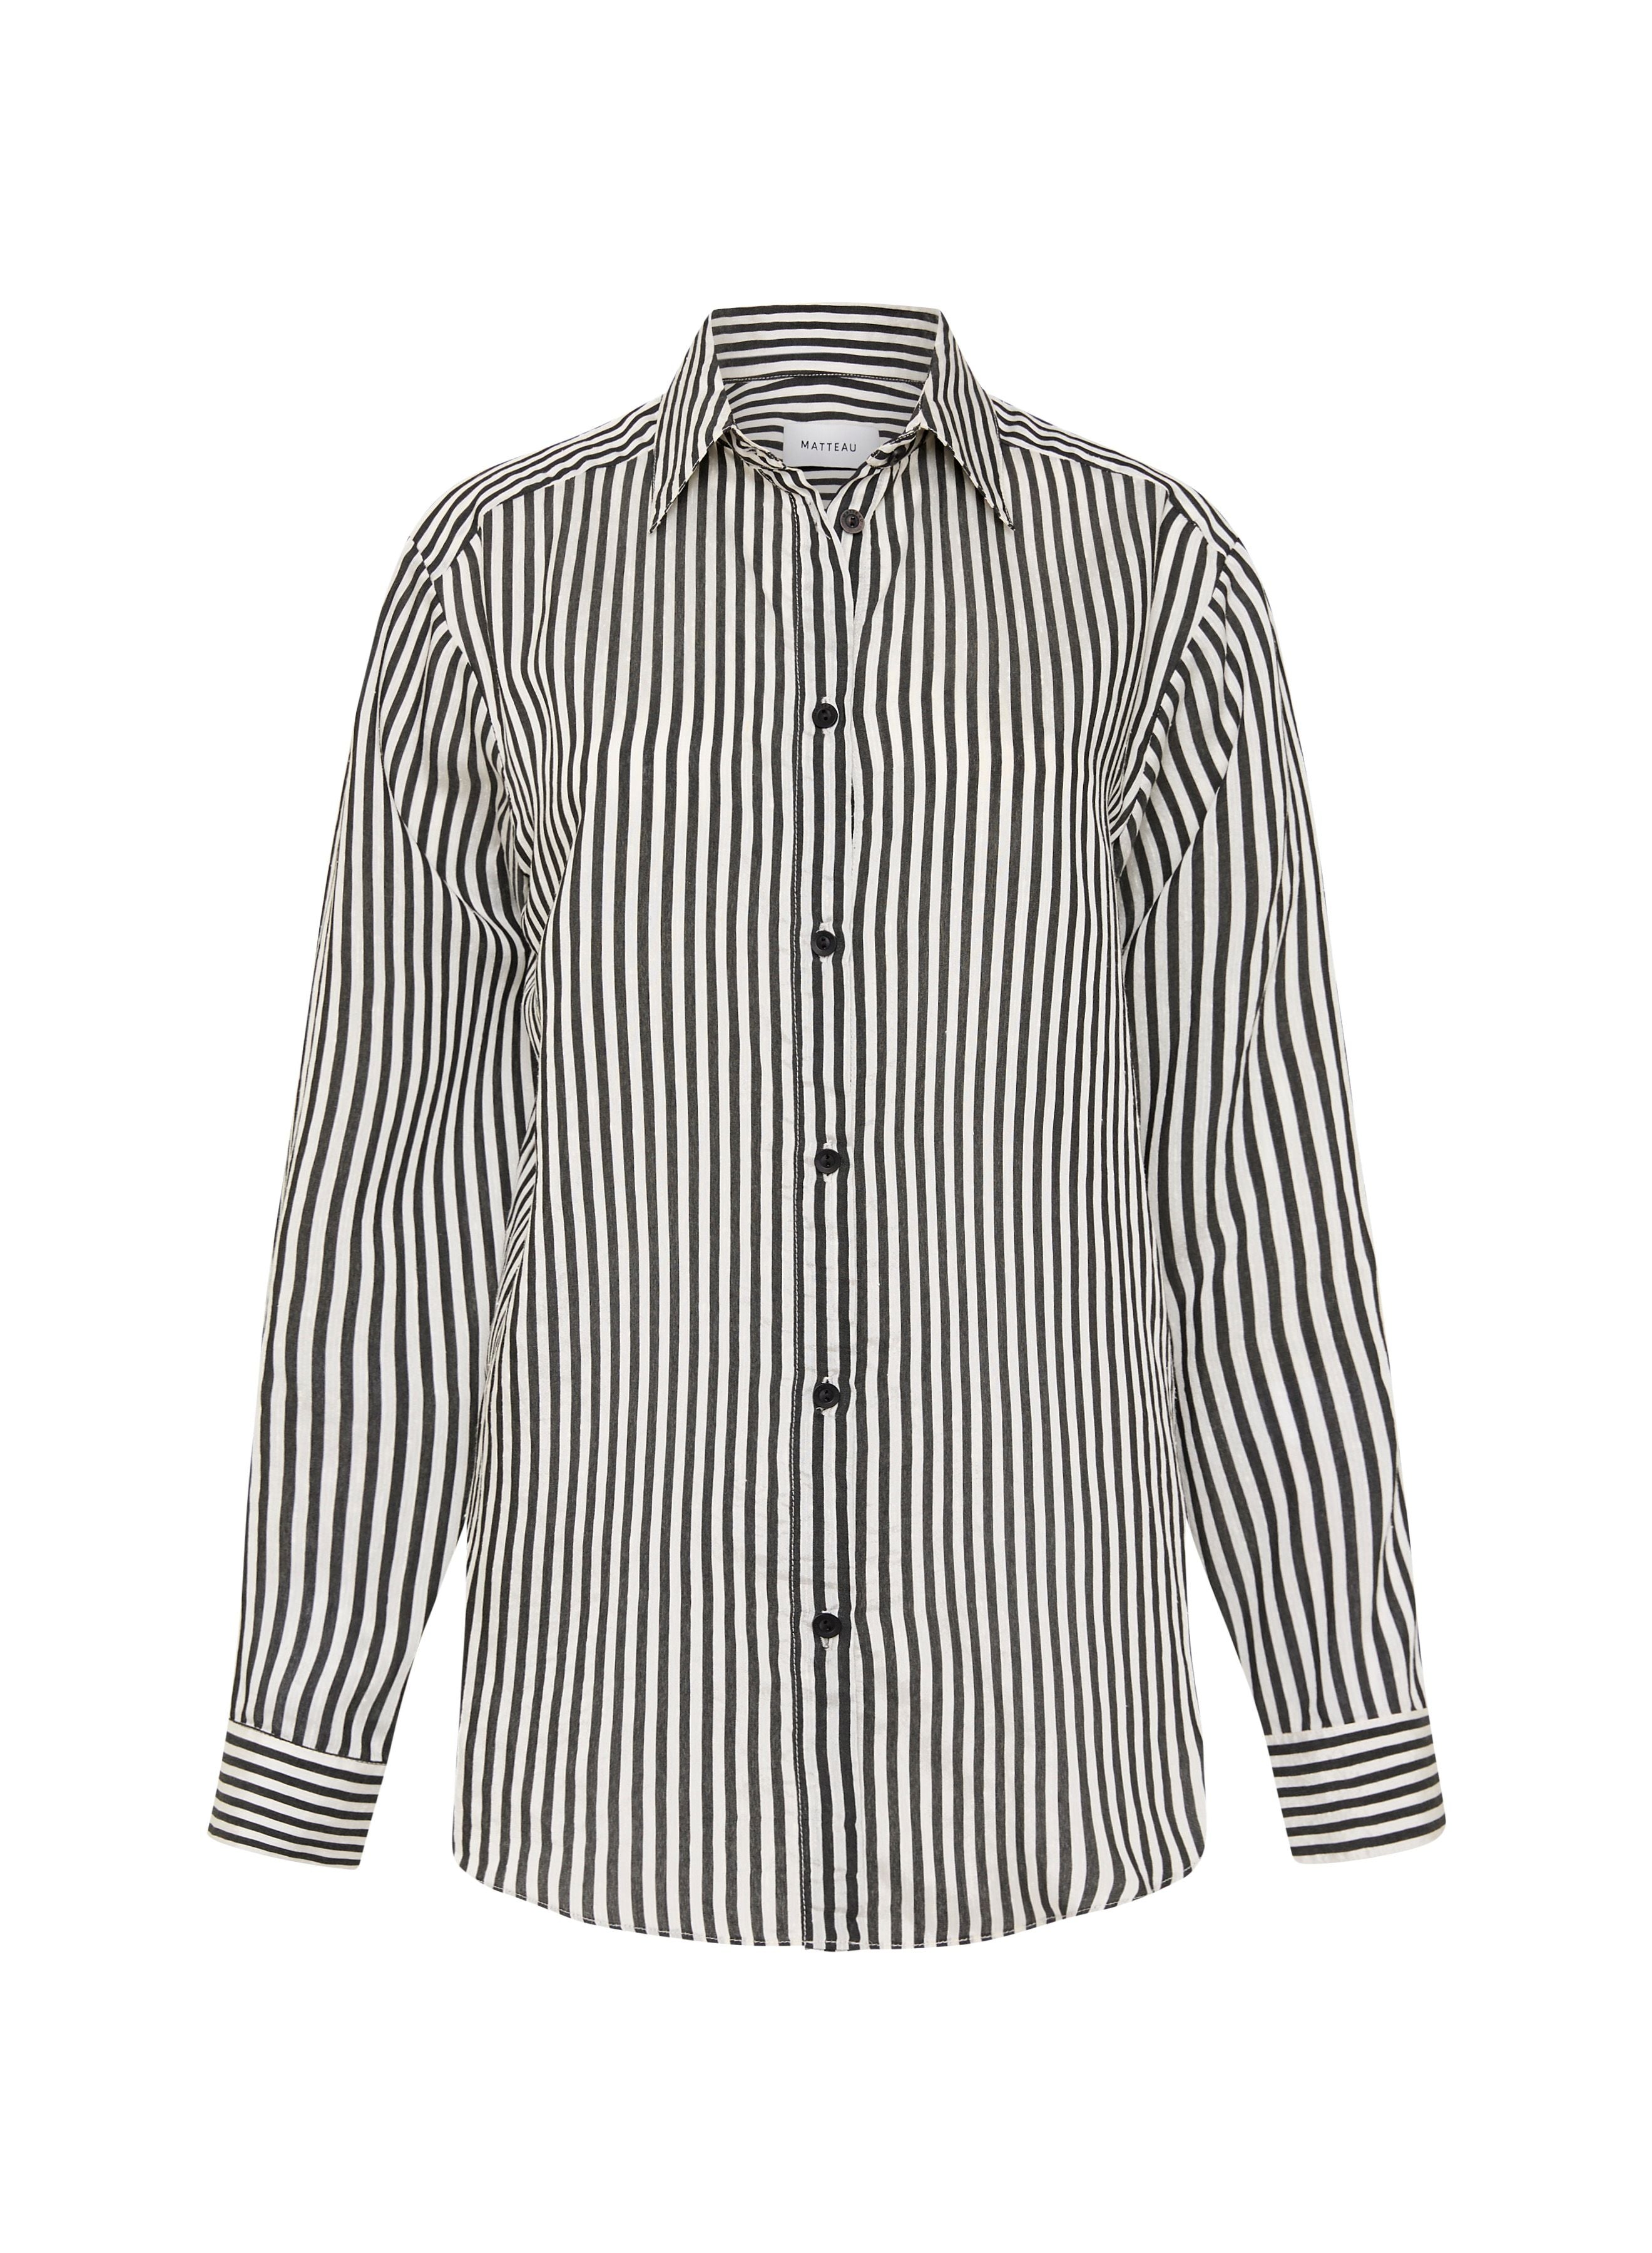 Matteau Classic Contrast Stripe Shirt - Ink Stripe